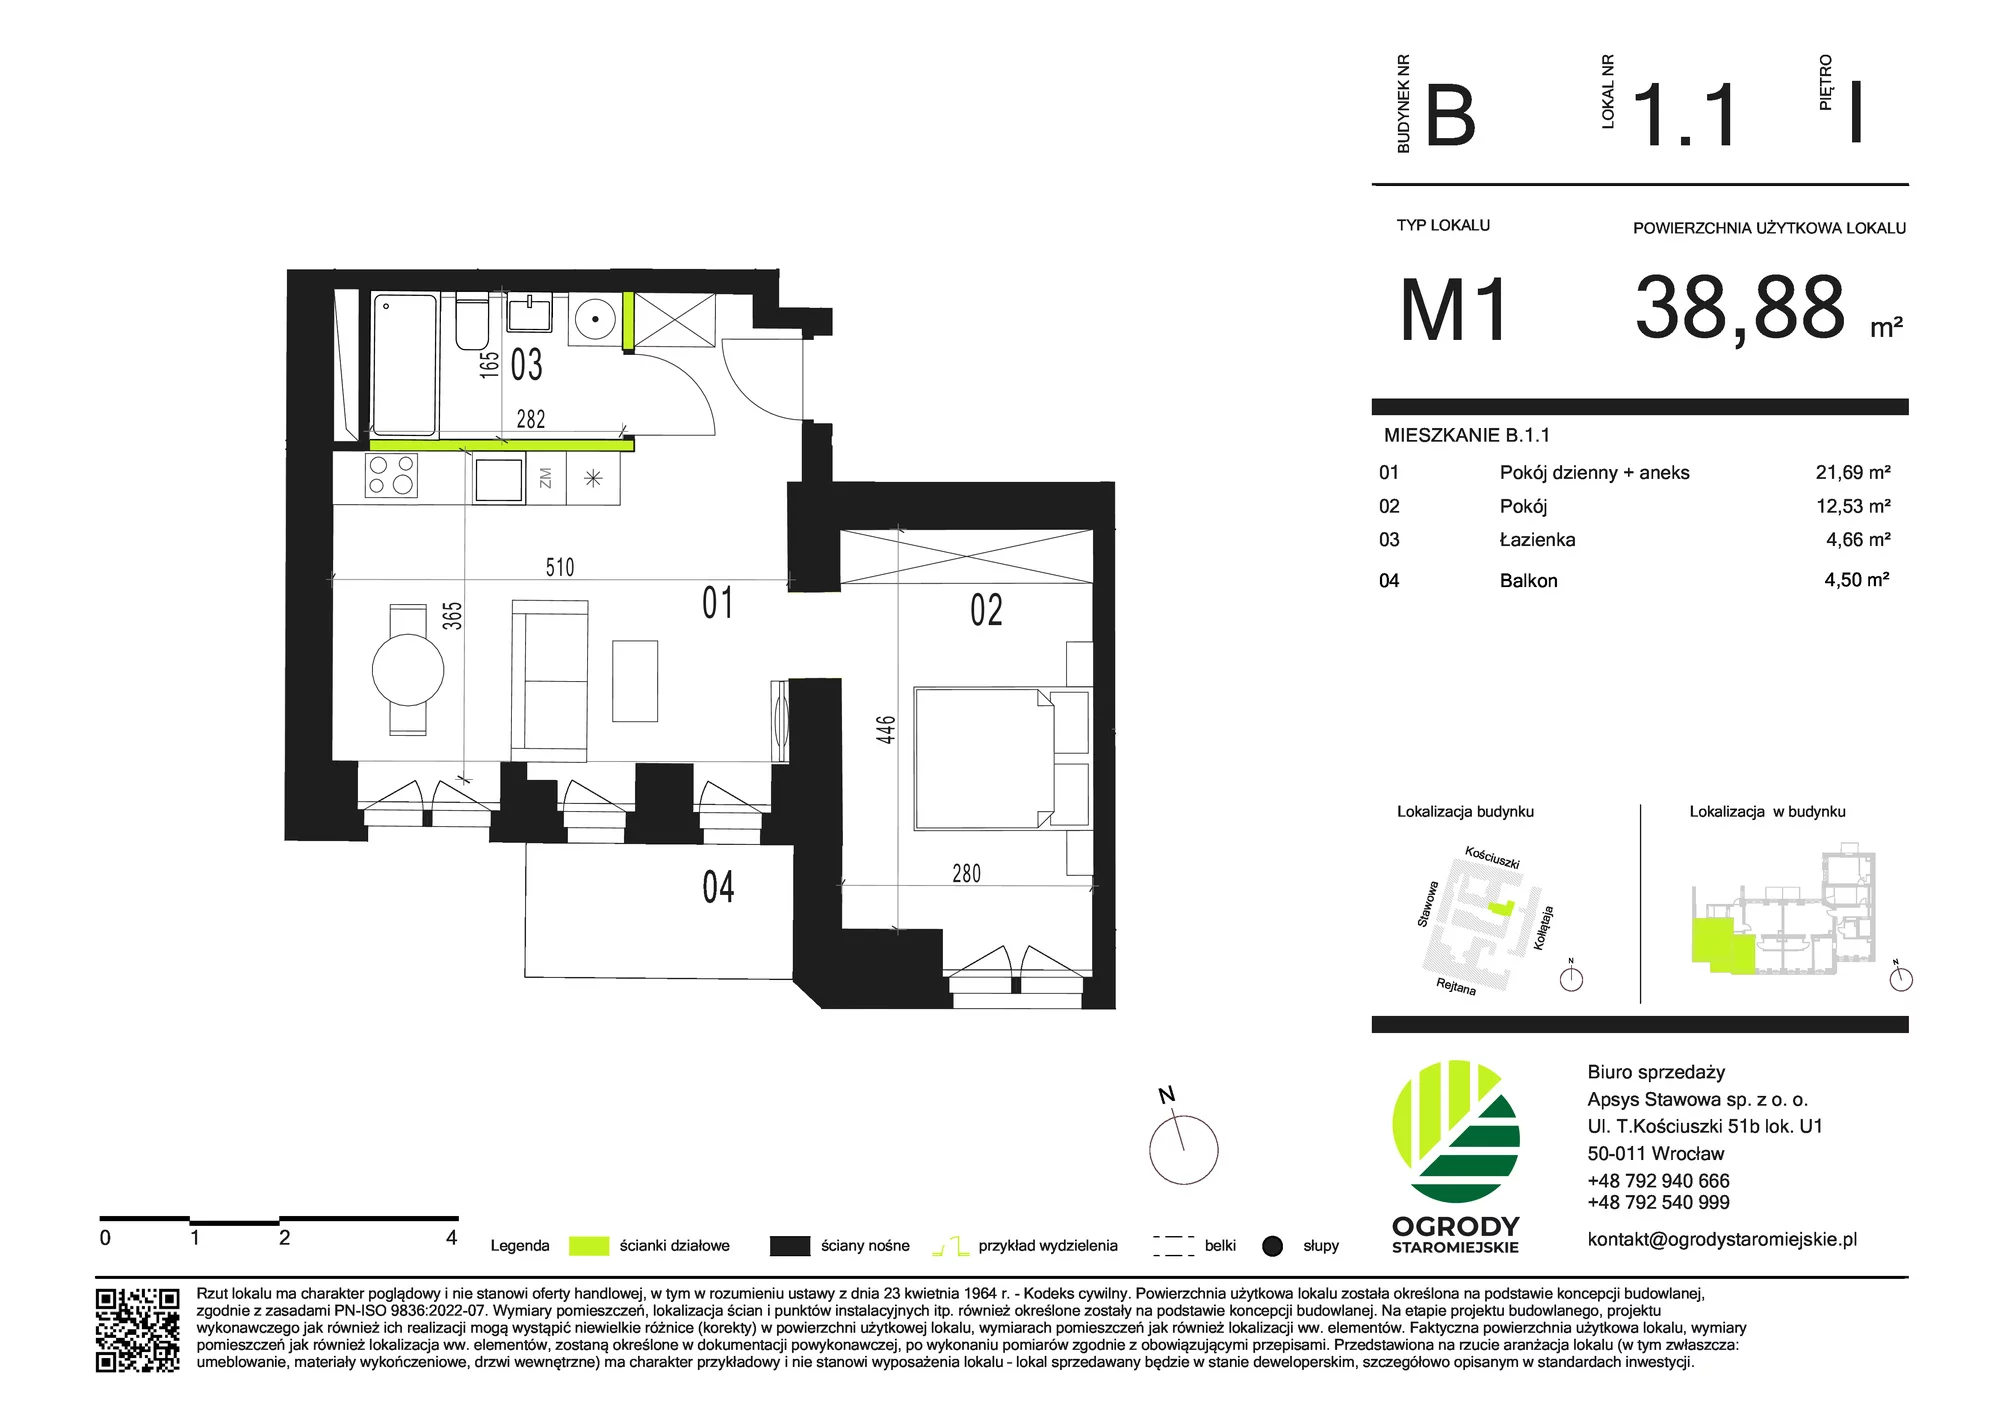 Mieszkanie 38,88 m², piętro 1, oferta nr B.1.1, Ogrody Staromiejskie, Wrocław, Przedmieście Świdnickie, ul. Stawowa 10